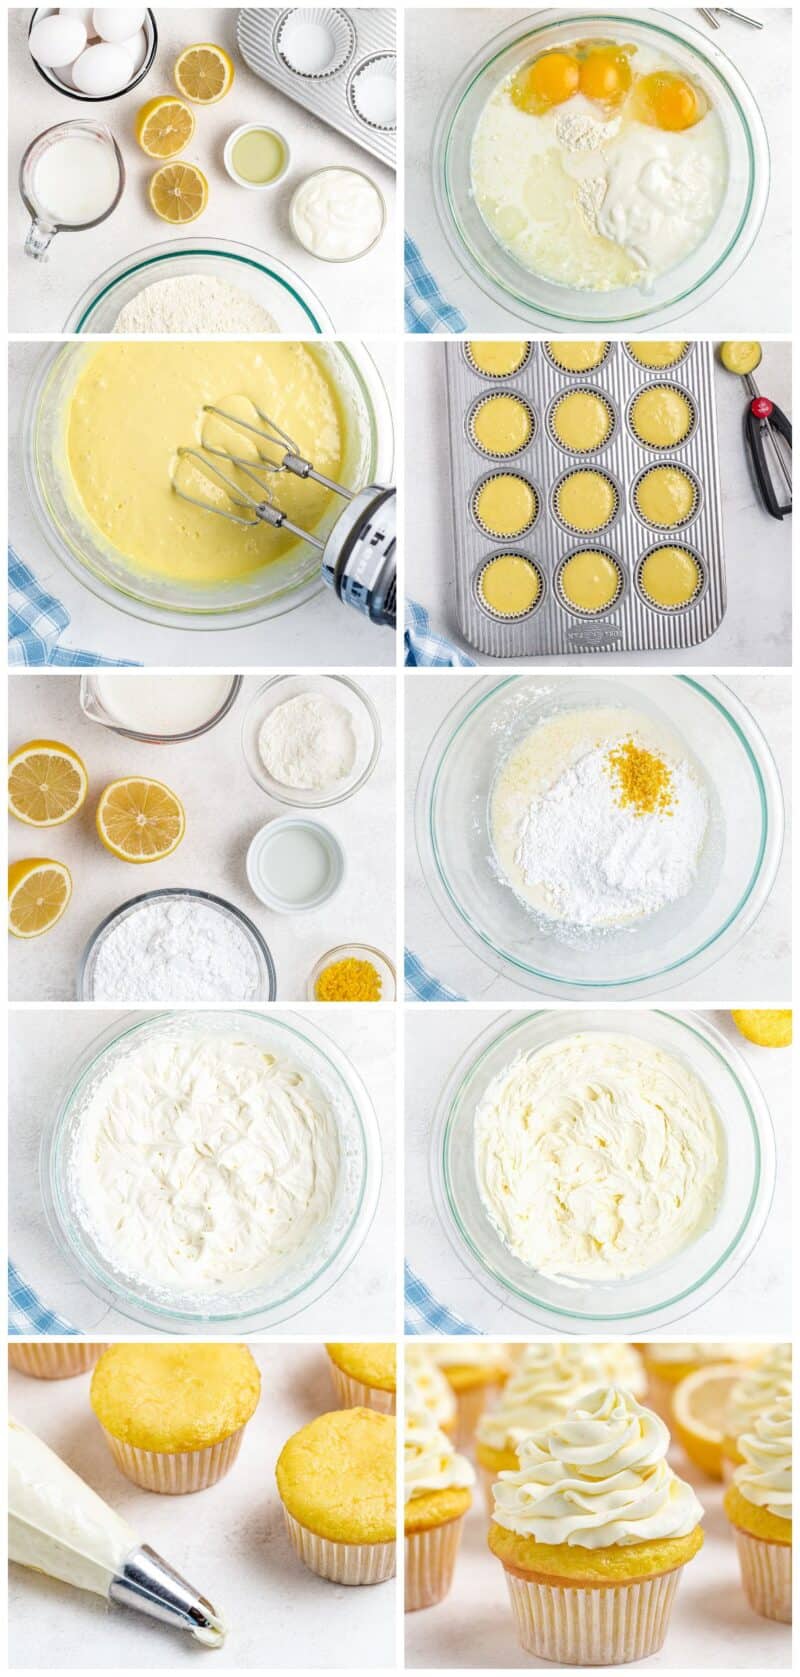 lemon cupcakes step by step recipe photos